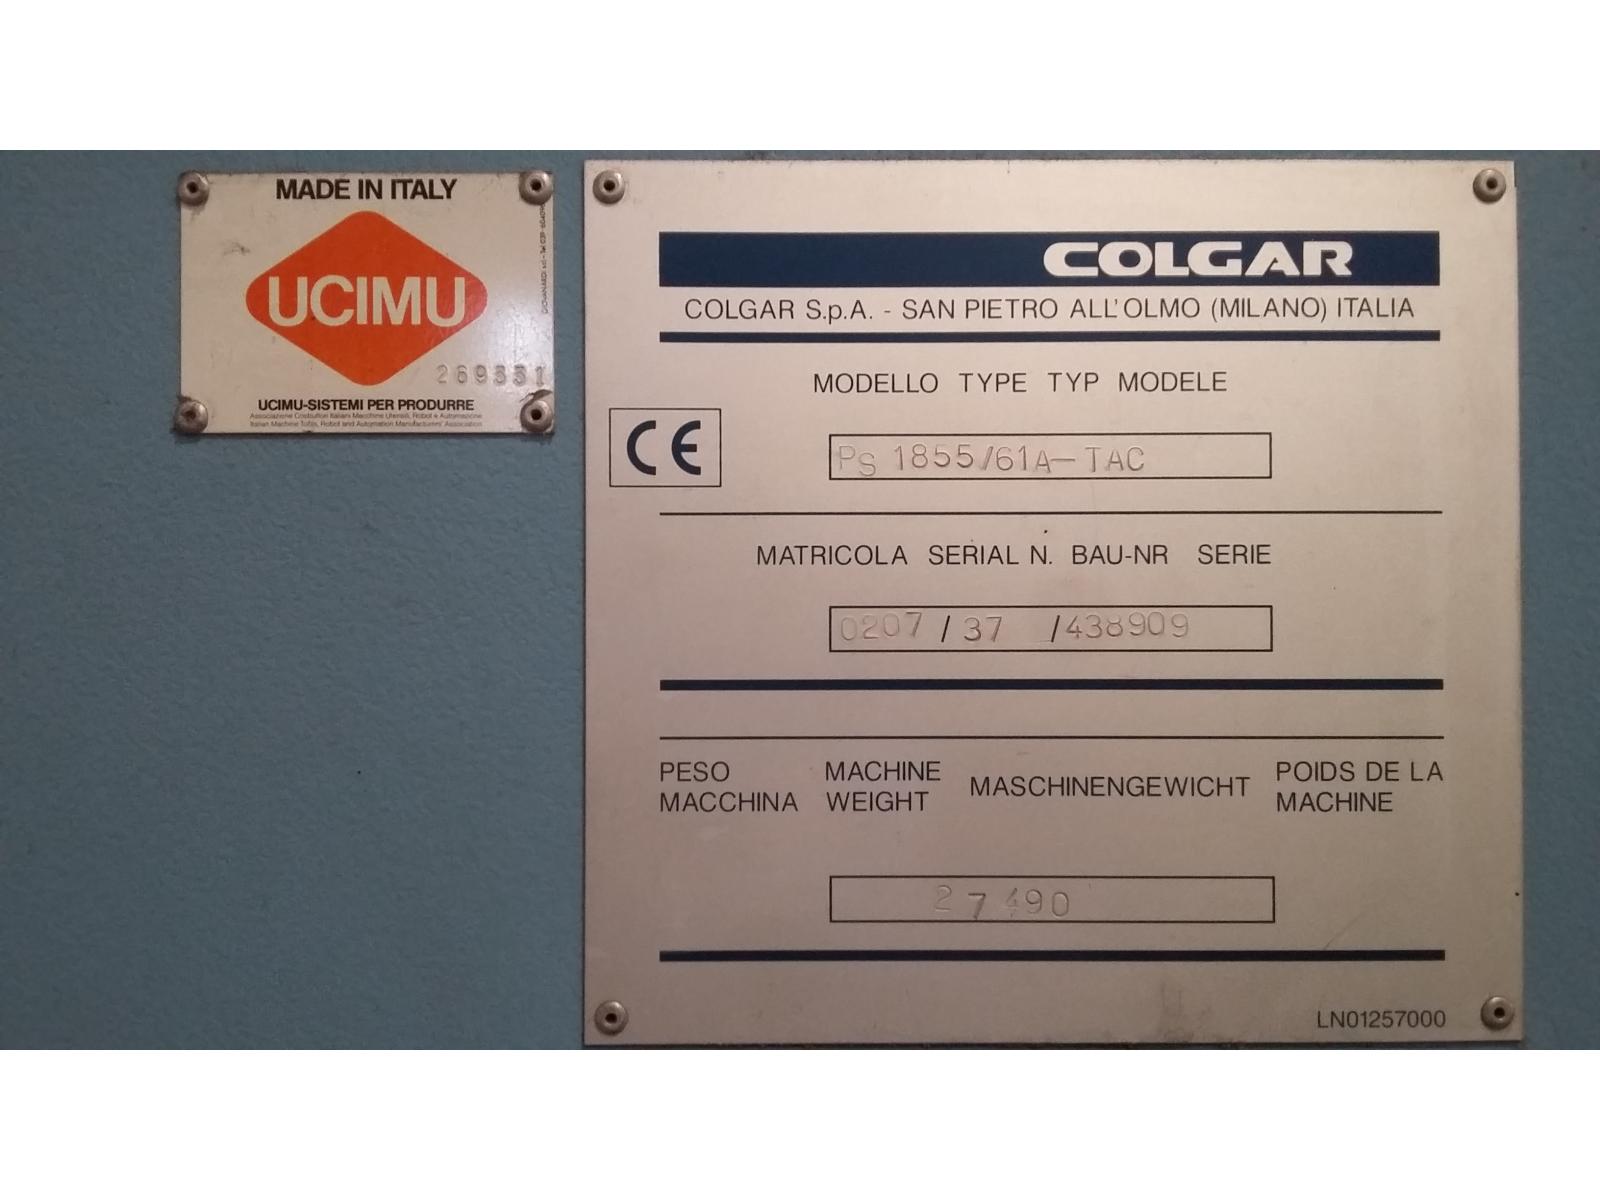 Pressa piegatrice COLGAR- PS1855/61A-TAC lamiera lunghezza 6.000 x 0,45-3,0 mm- Anno di costruzione 2006- In ottimo stato- Dispo